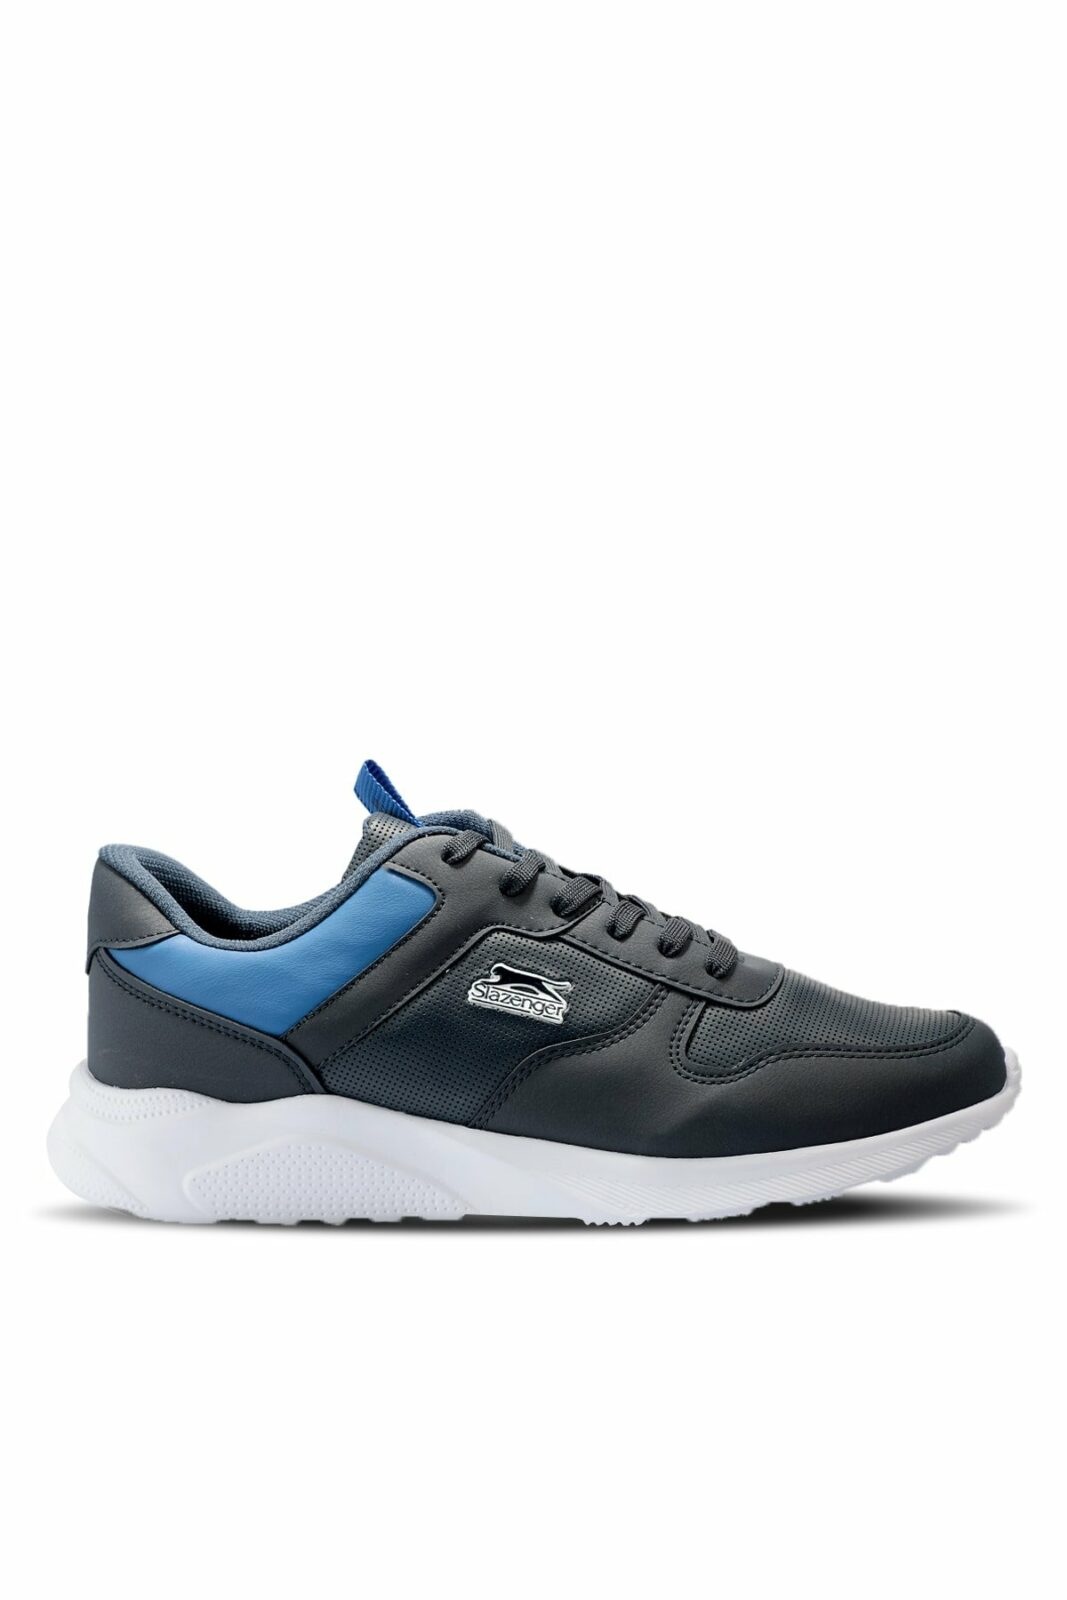 Slazenger Sneakers - Navy blue